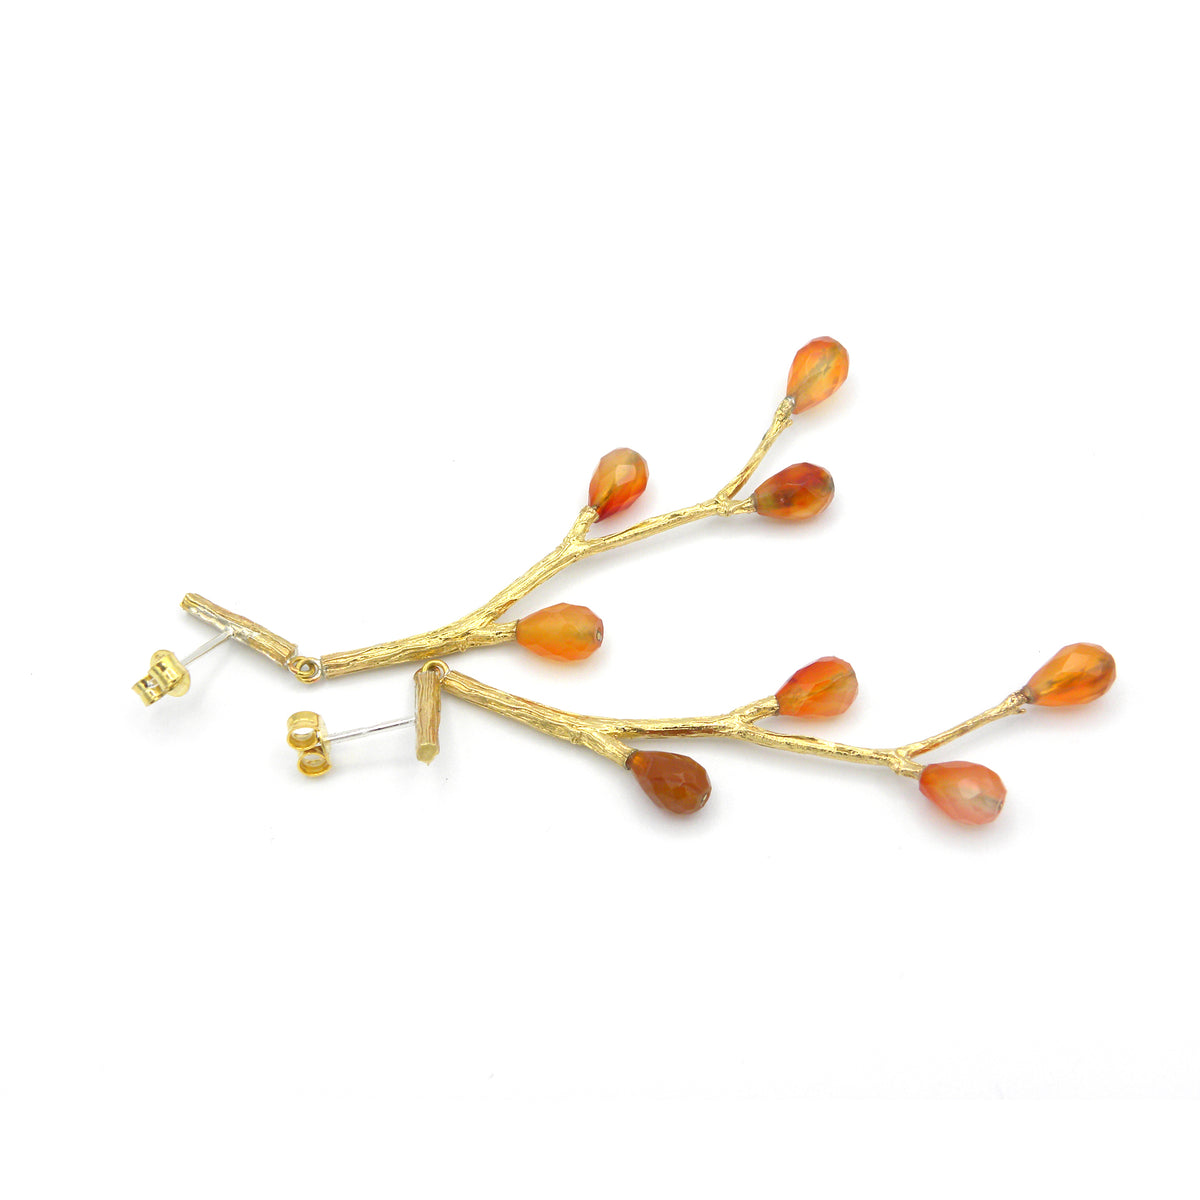 Branch and carnelian earrings